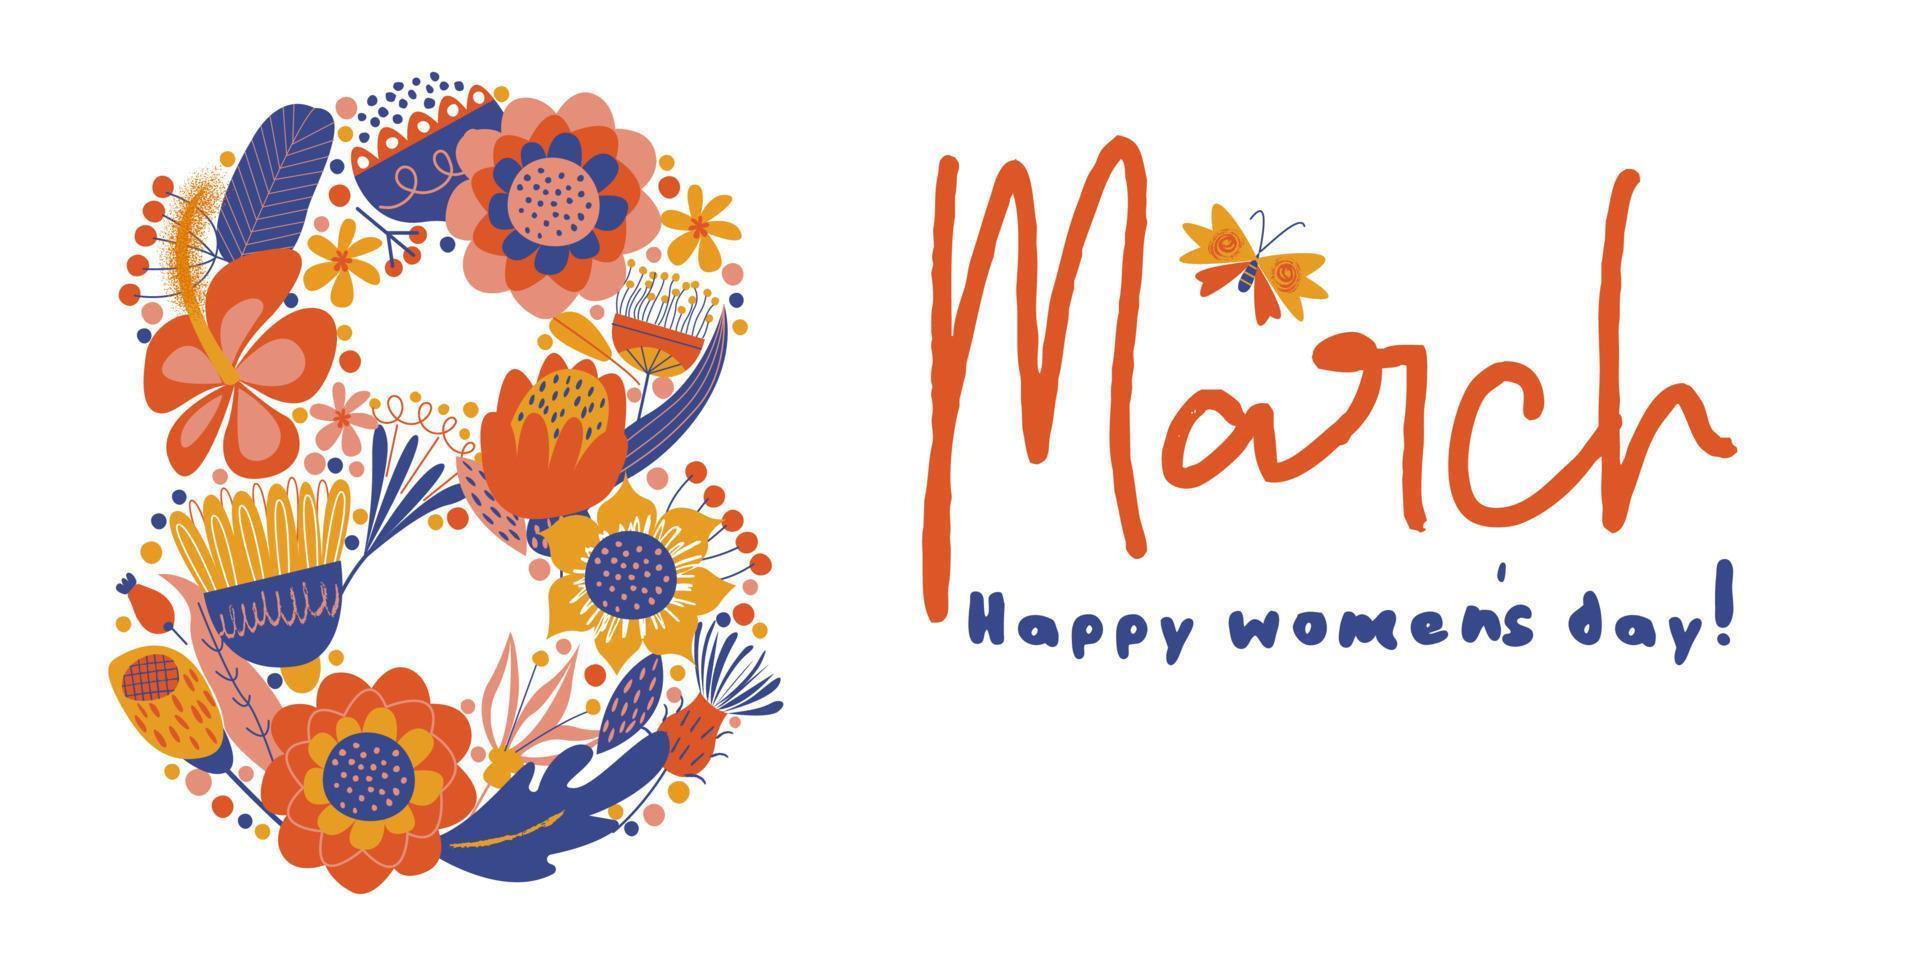 wenskaart, banner voor de internationale Vrouwendag op 8 maart vectorillustratie op een witte achtergrond. vector